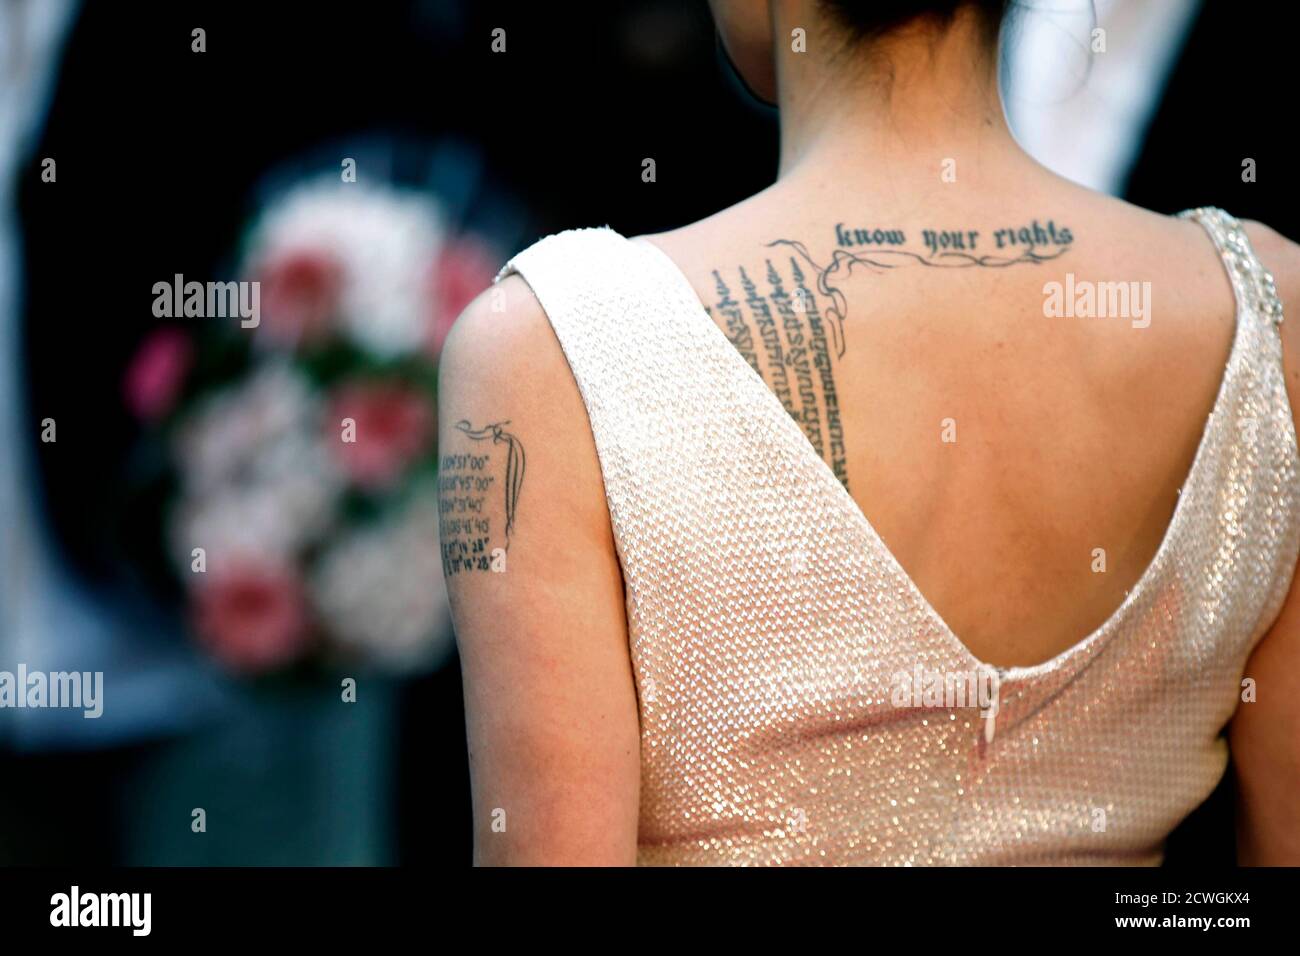 Los tatuajes se pueden ver en el brazo y en la espalda de la actriz Angelina  Jolie cuando llega para el estreno de Francia de su película 'Salt' en  París el 17